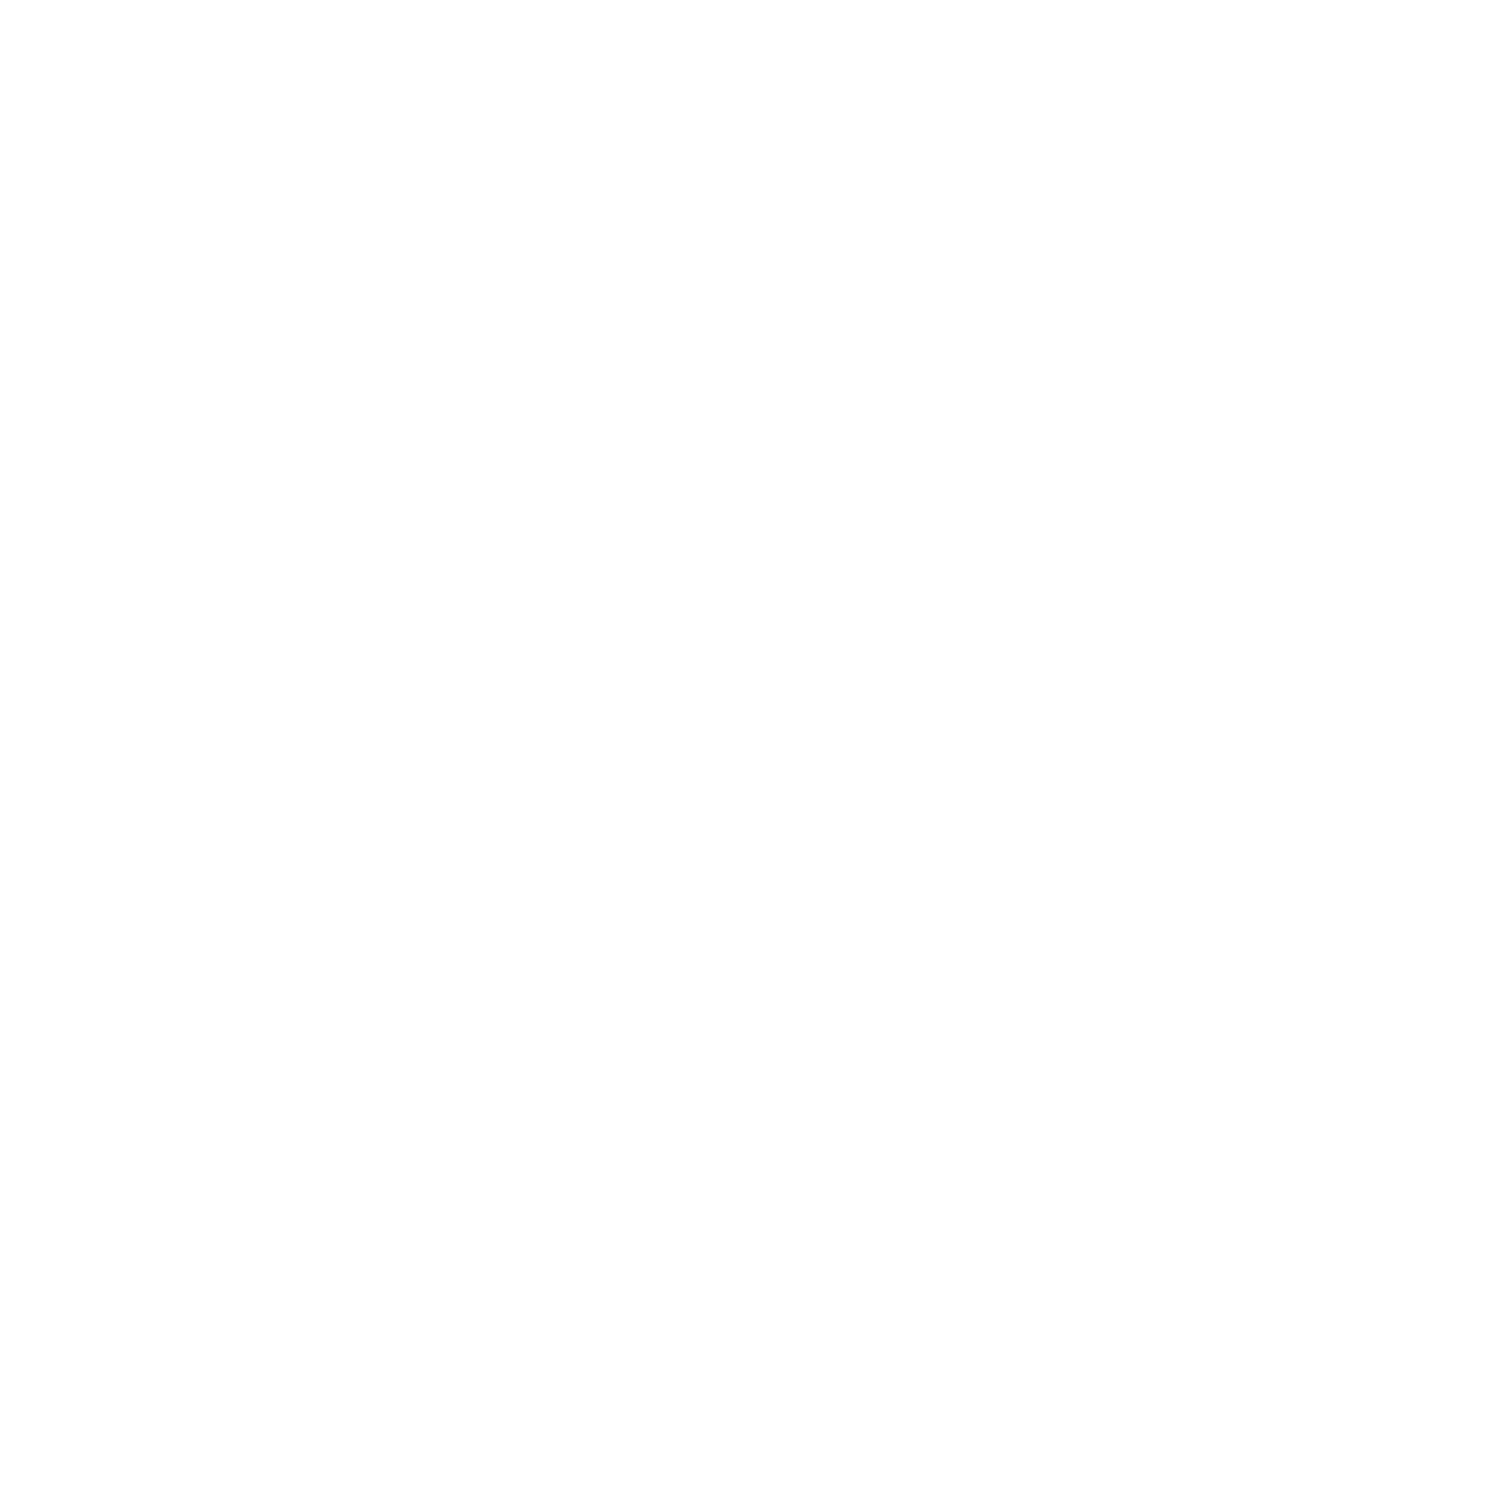 Total Tone